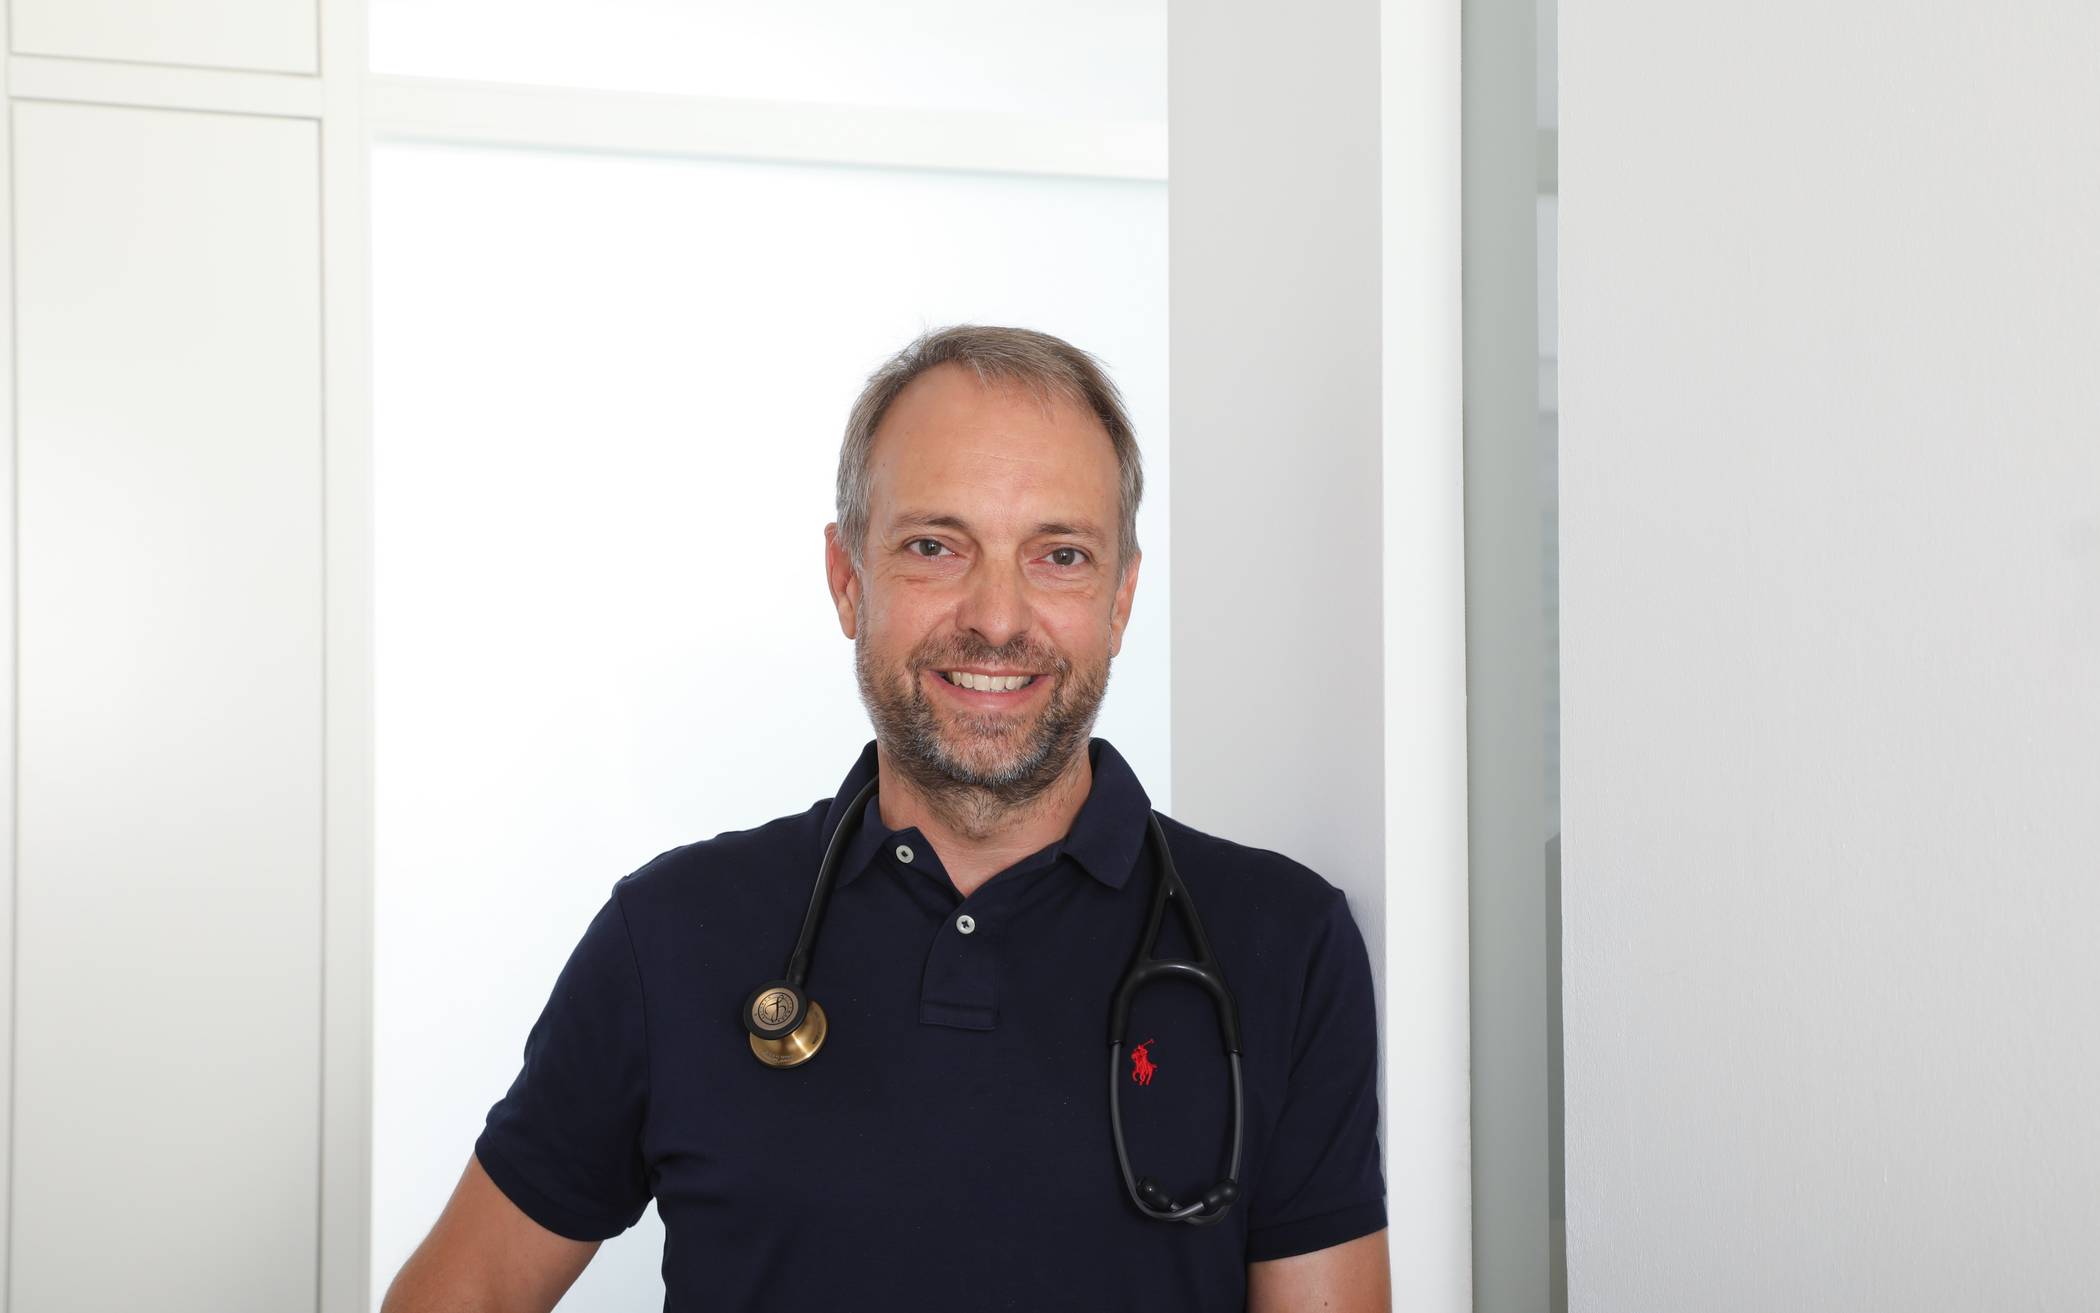  Dr. med. Guido Pukies hat das Corona-Testzentrum mit aufgebaut. Er ist Facharzt für Innere Medizin und Naturheilverfahren, sowie akademischer Lehrbeauftragter der Heinrich-Heine-Universität Düsseldorf und akademischer Lehrbeauftragter der Universität zu Köln. 